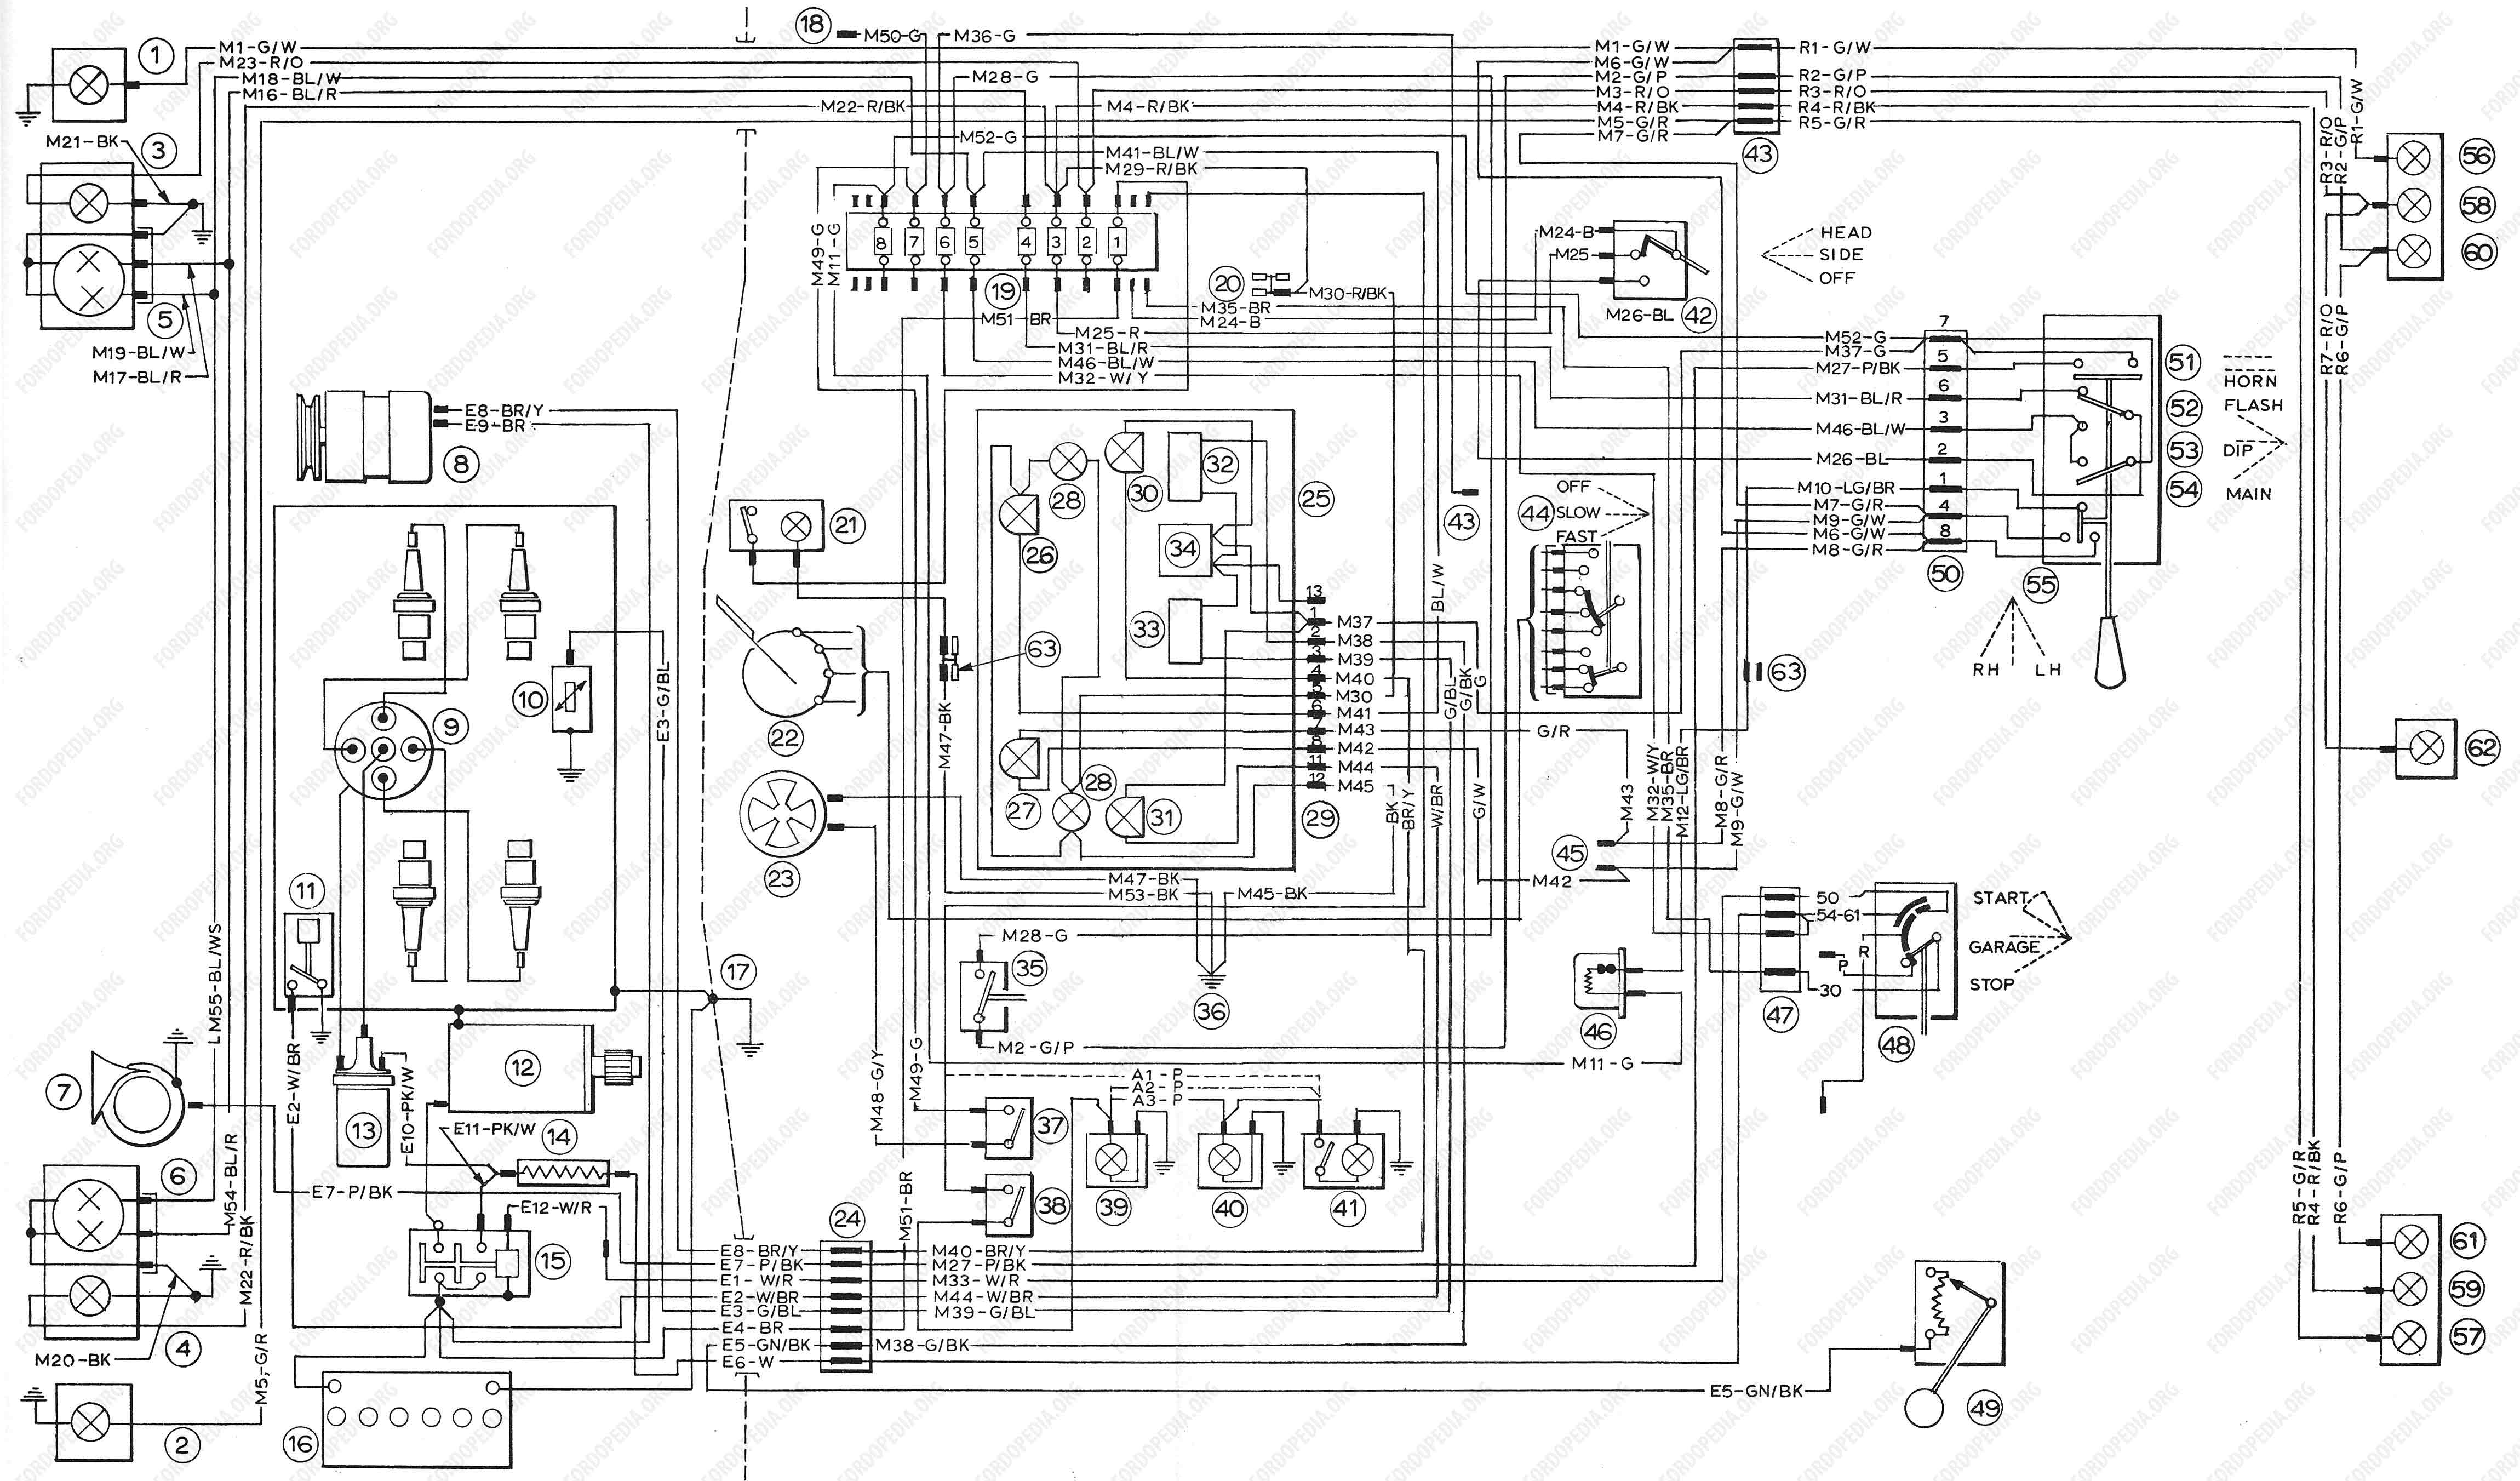 1997 Ford transit radio wiring diagram